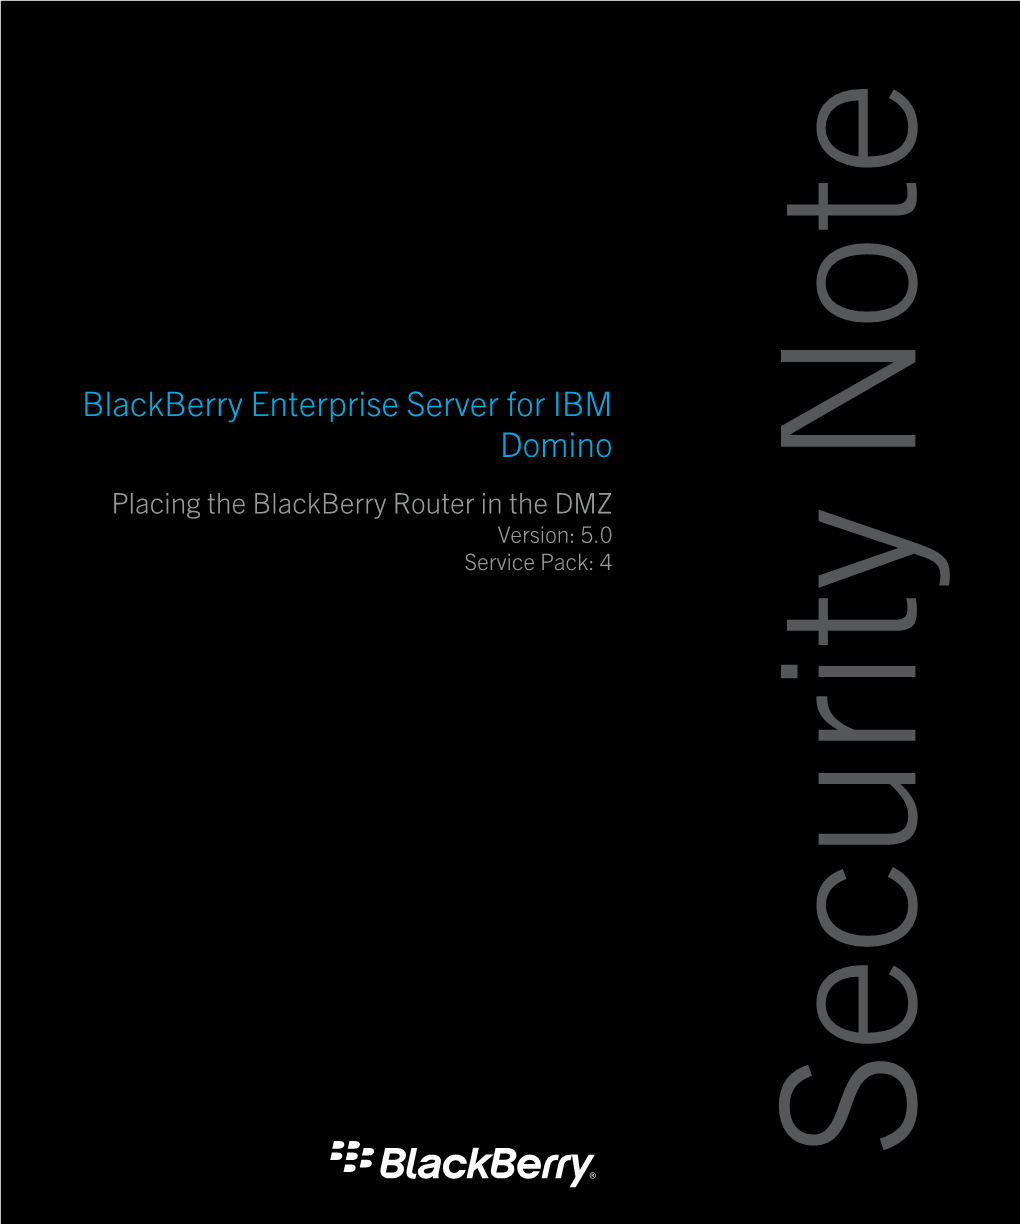 Blackberry Enterprise Server for IBM Domino